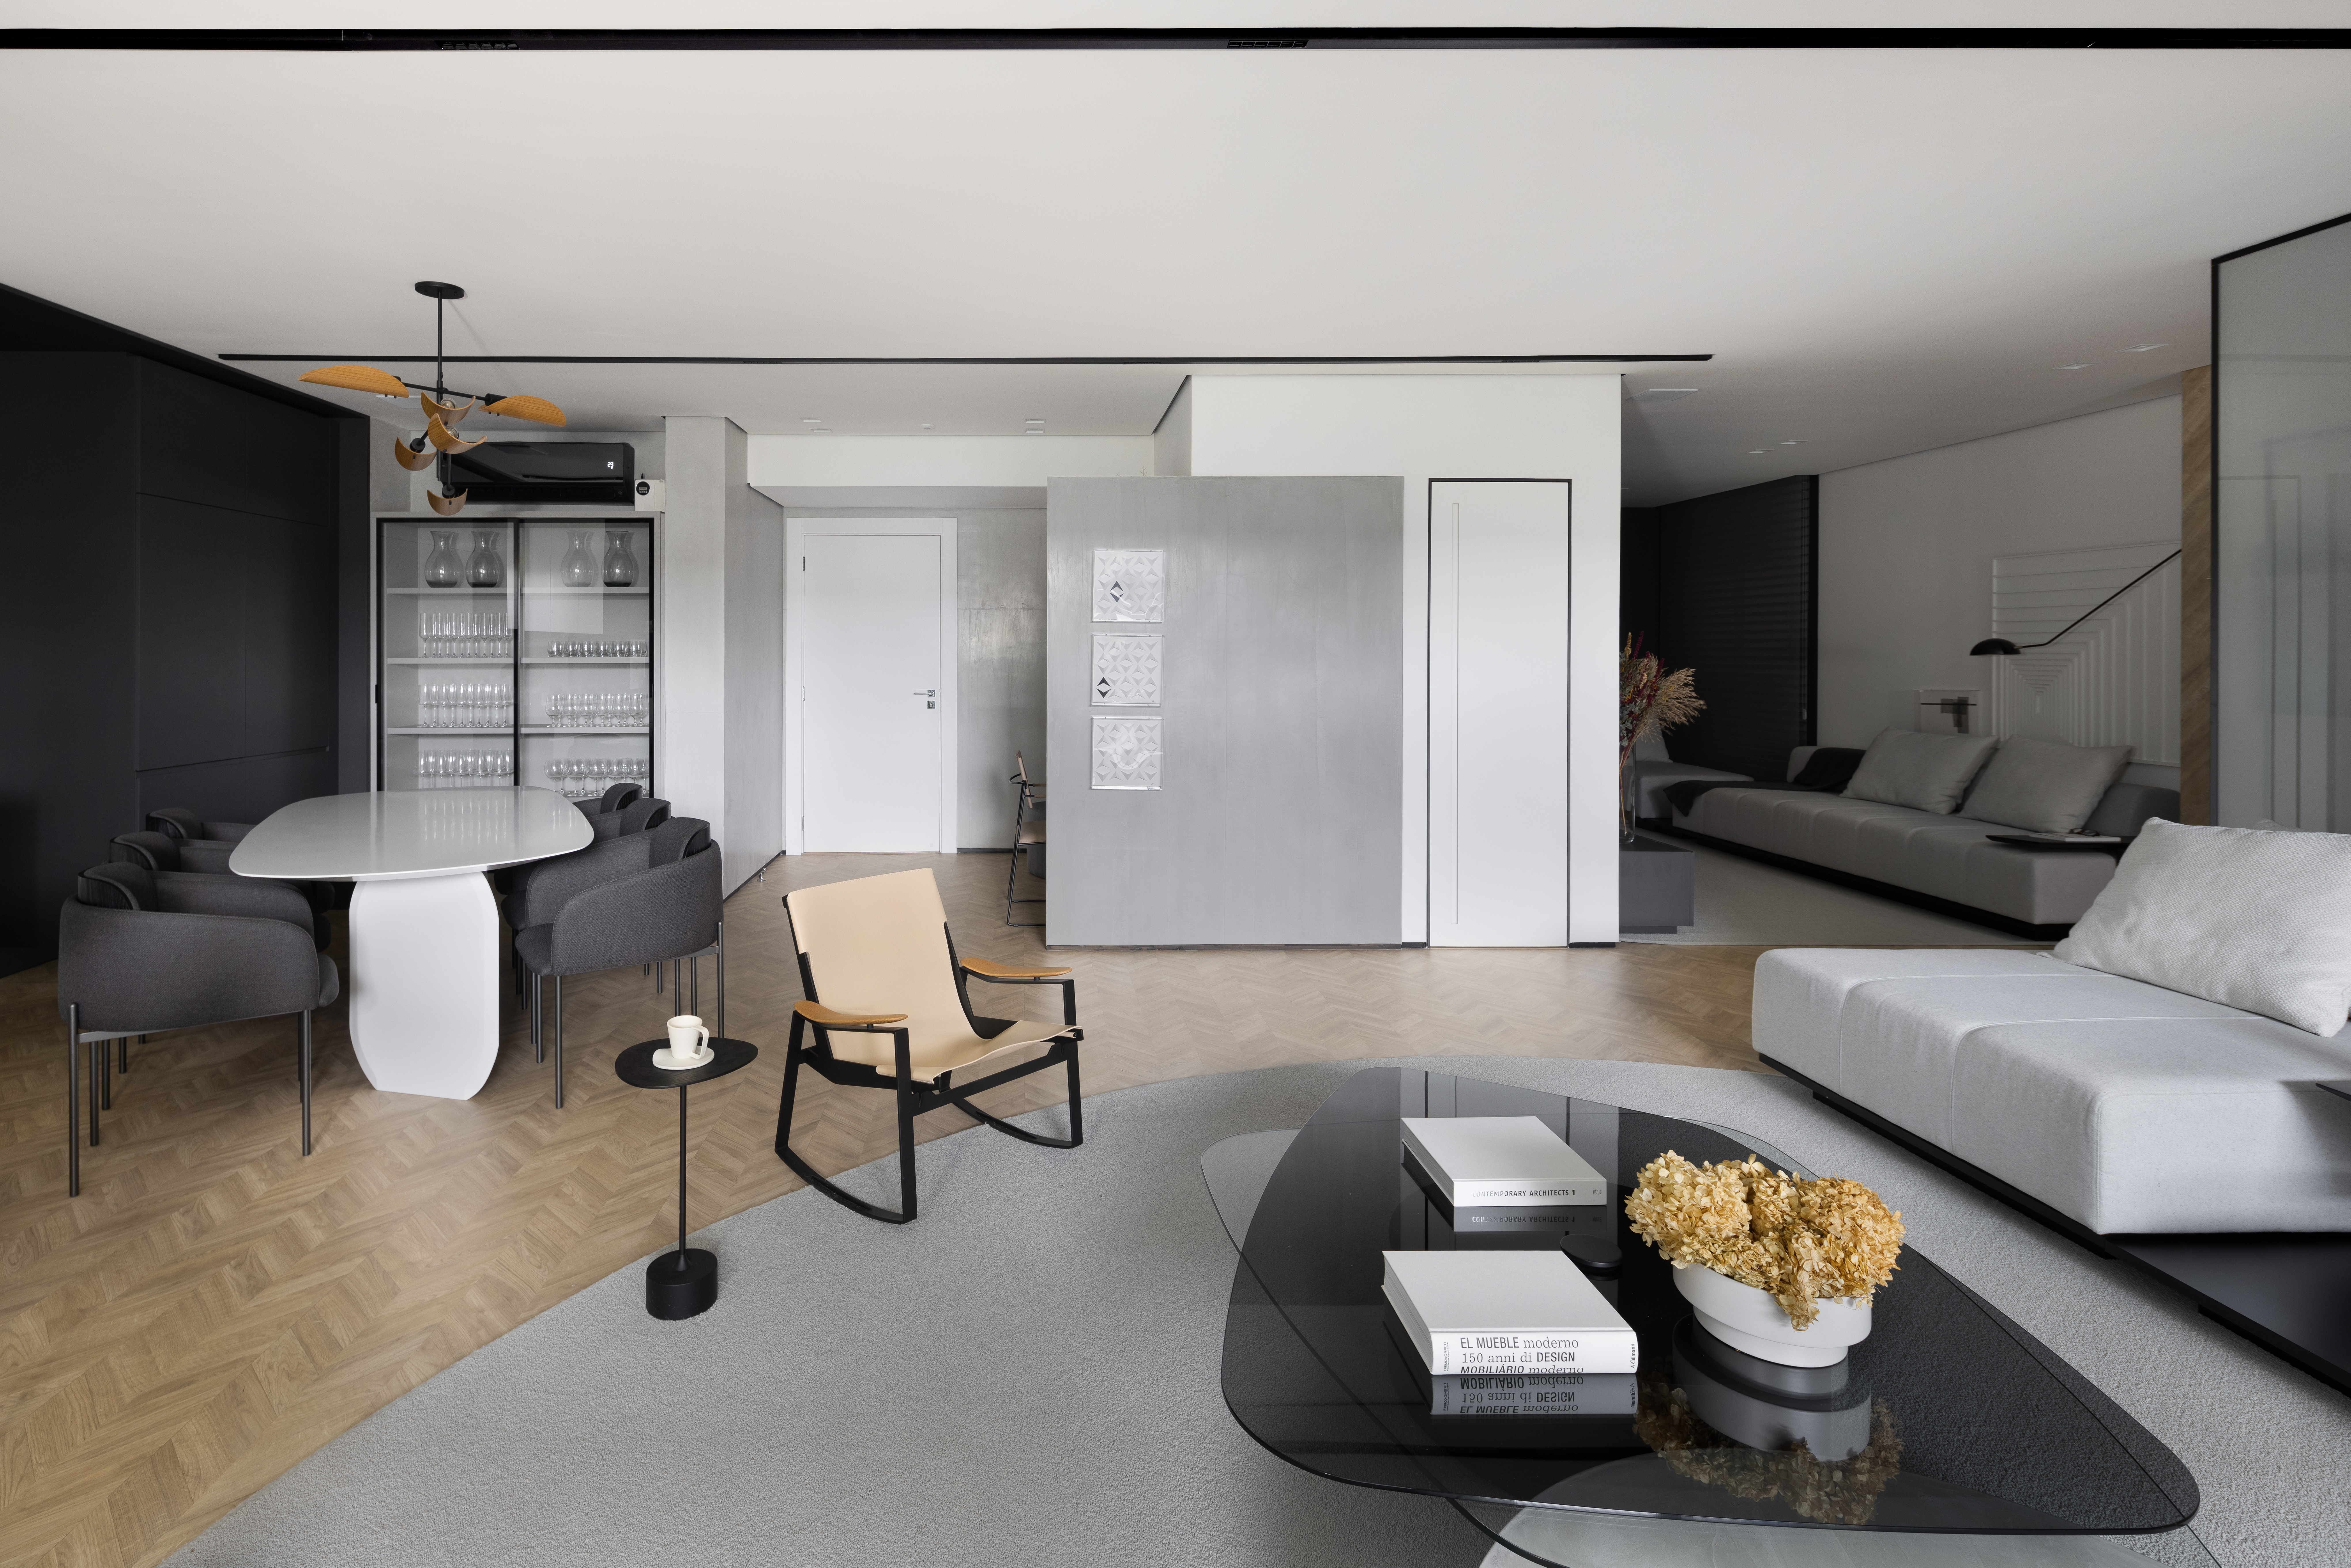 Apê de 142 m² tem paleta elegante de preto e branco e layout integrado. Projeto de Boher Arquitetos. Na foto, sala de estar com sofá cinza, mesa de centro preta, poltrona, tapete cinza.